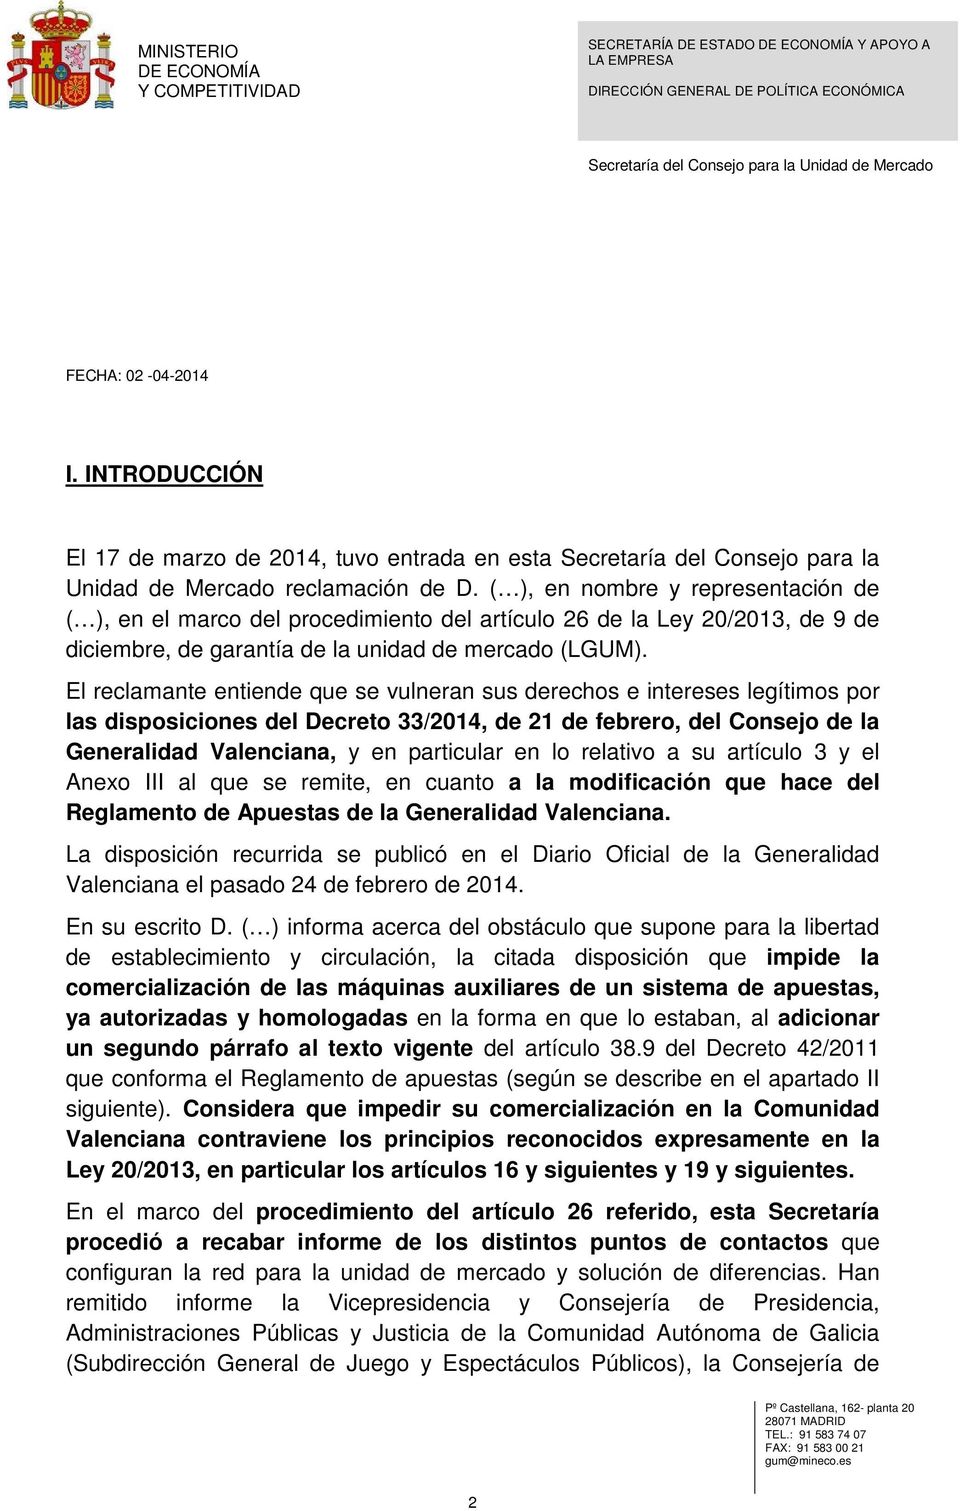 El reclamante entiende que se vulneran sus derechos e intereses legítimos por las disposiciones del Decreto 33/2014, de 21 de febrero, del Consejo de la Generalidad Valenciana, y en particular en lo